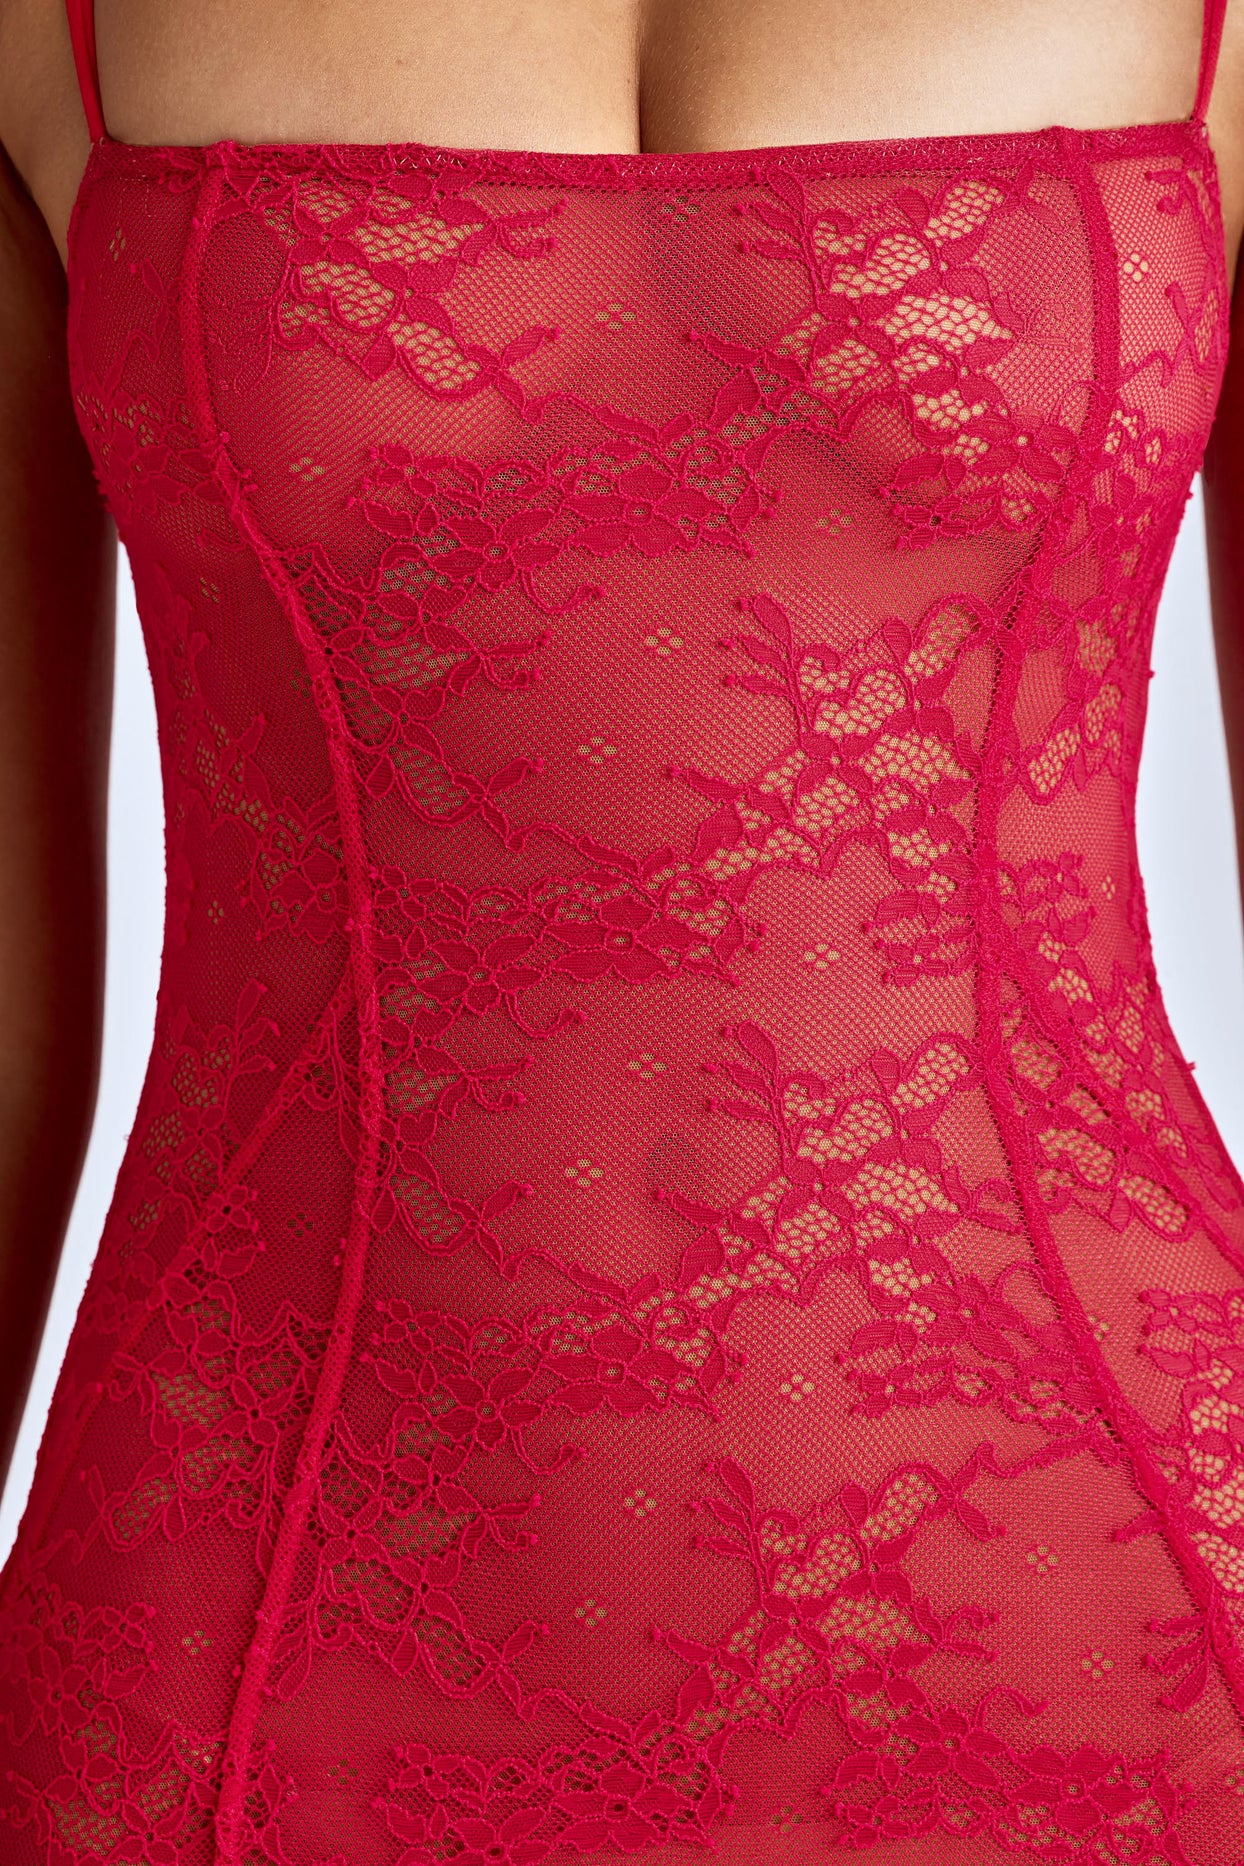 Przezroczysta koronkowa suknia typu fishtail w kolorze wiśniowej czerwieni